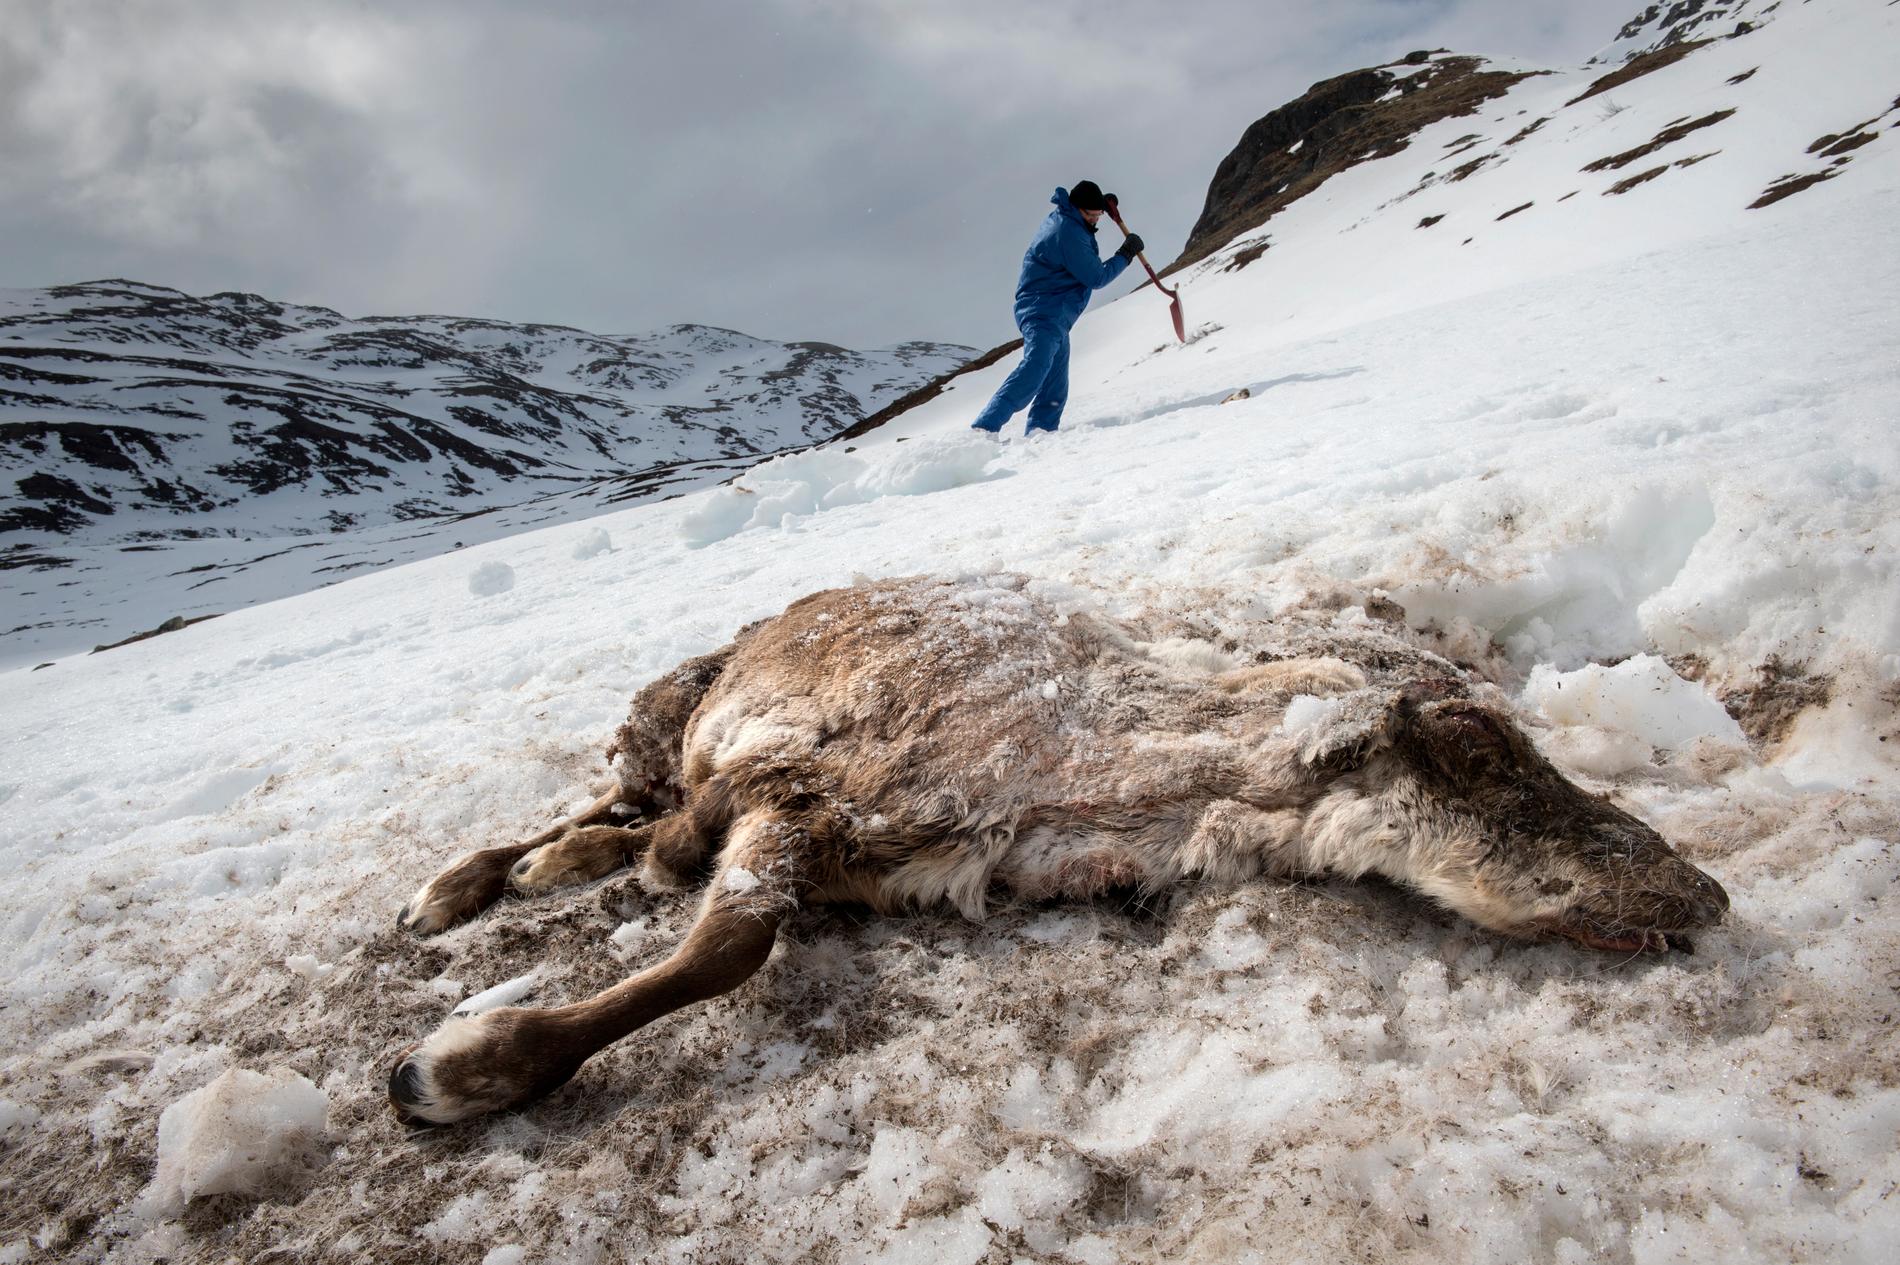 SANERING: Det er påvist skrantesyke på bare tre dyr i Nordfjella. Kanskje er så få som en prosent av bestanden smittet.